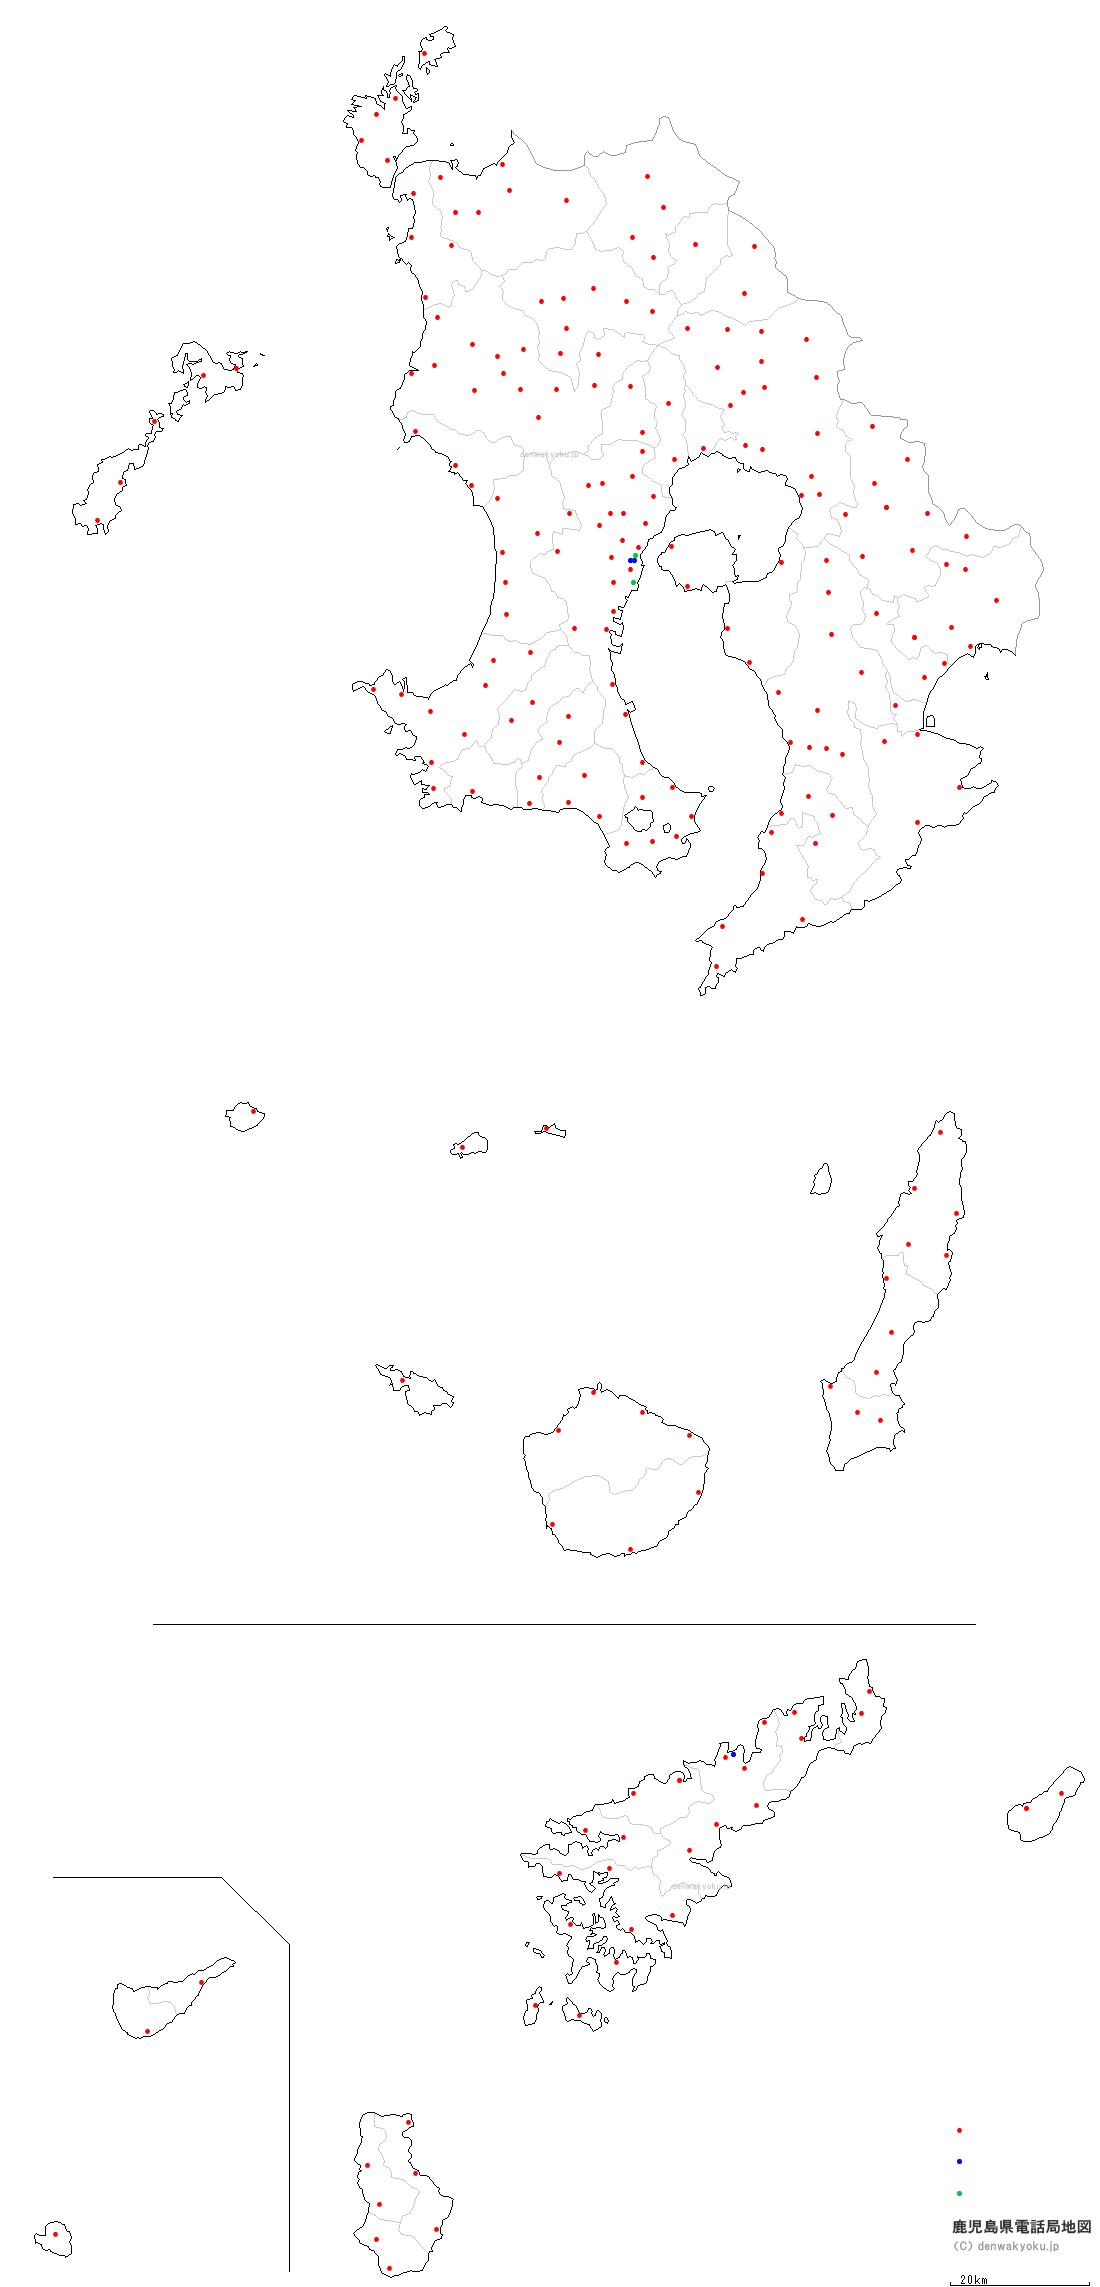 鹿児島県電話局地図